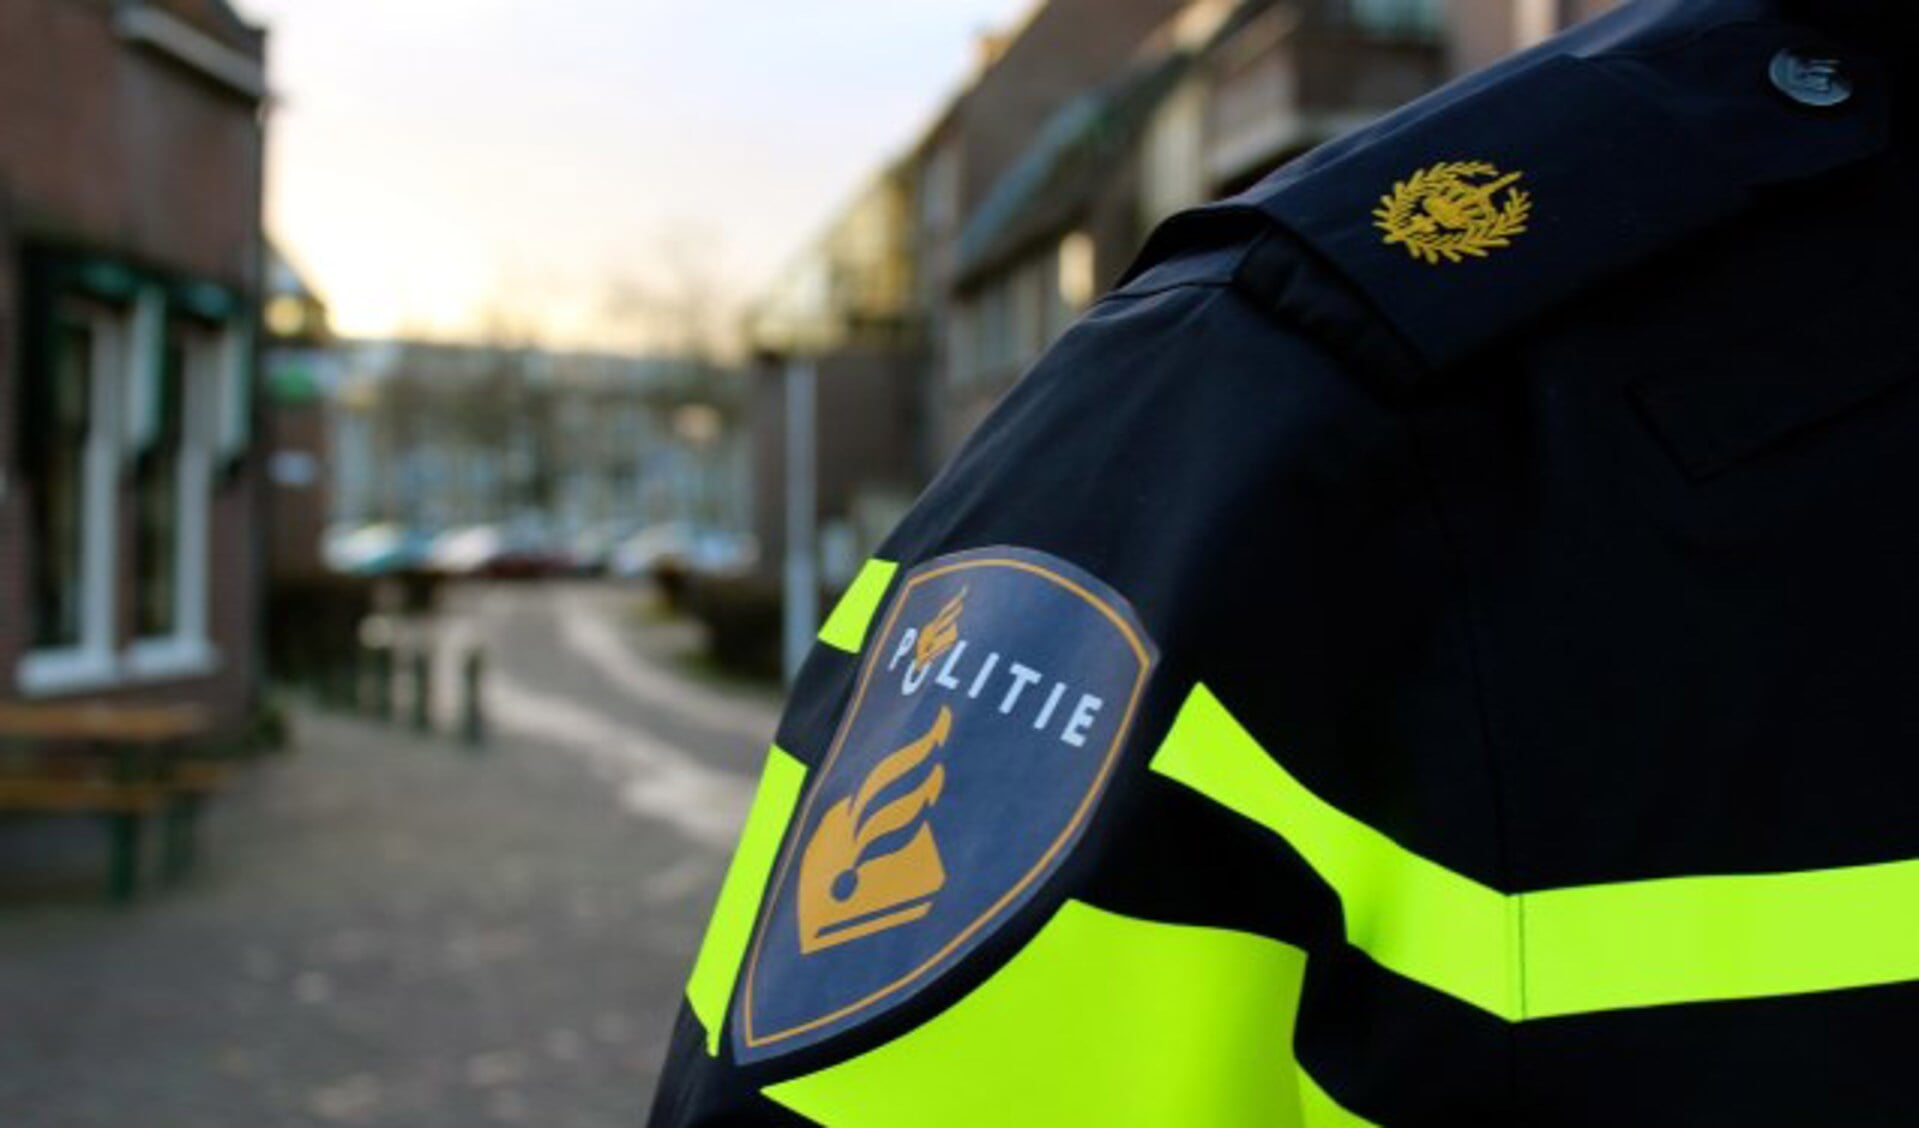 Limburgse gemeenten pleiten per brandbrief voor meer politie in het gebied Venray-Gennep.